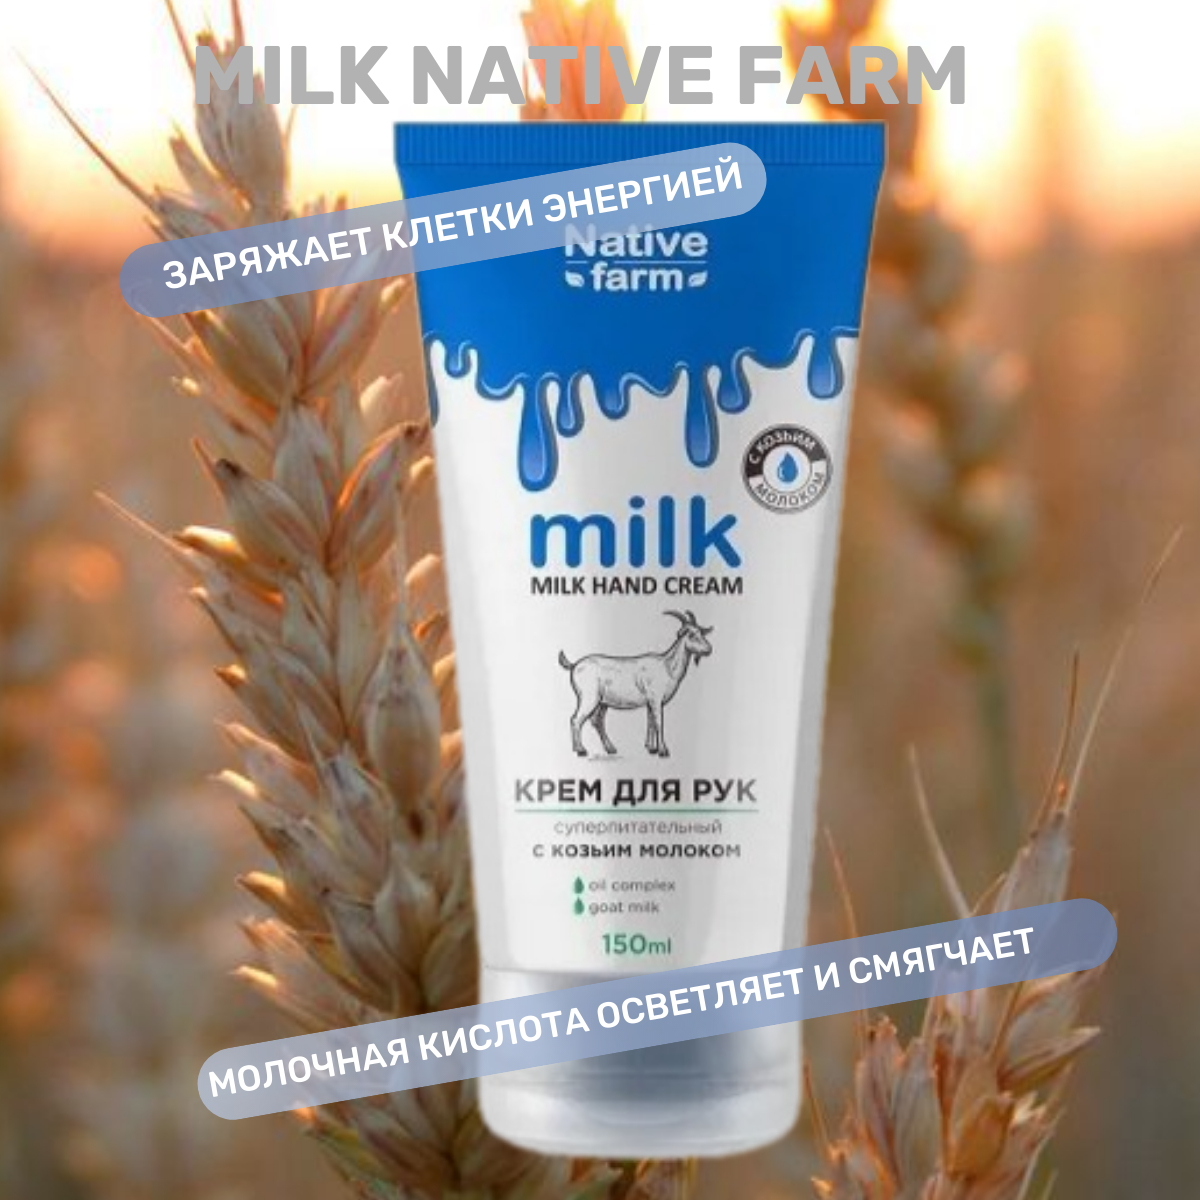 Крем для рук Milk Native Farm суперпитательный с козьим молоком, 150 мл.